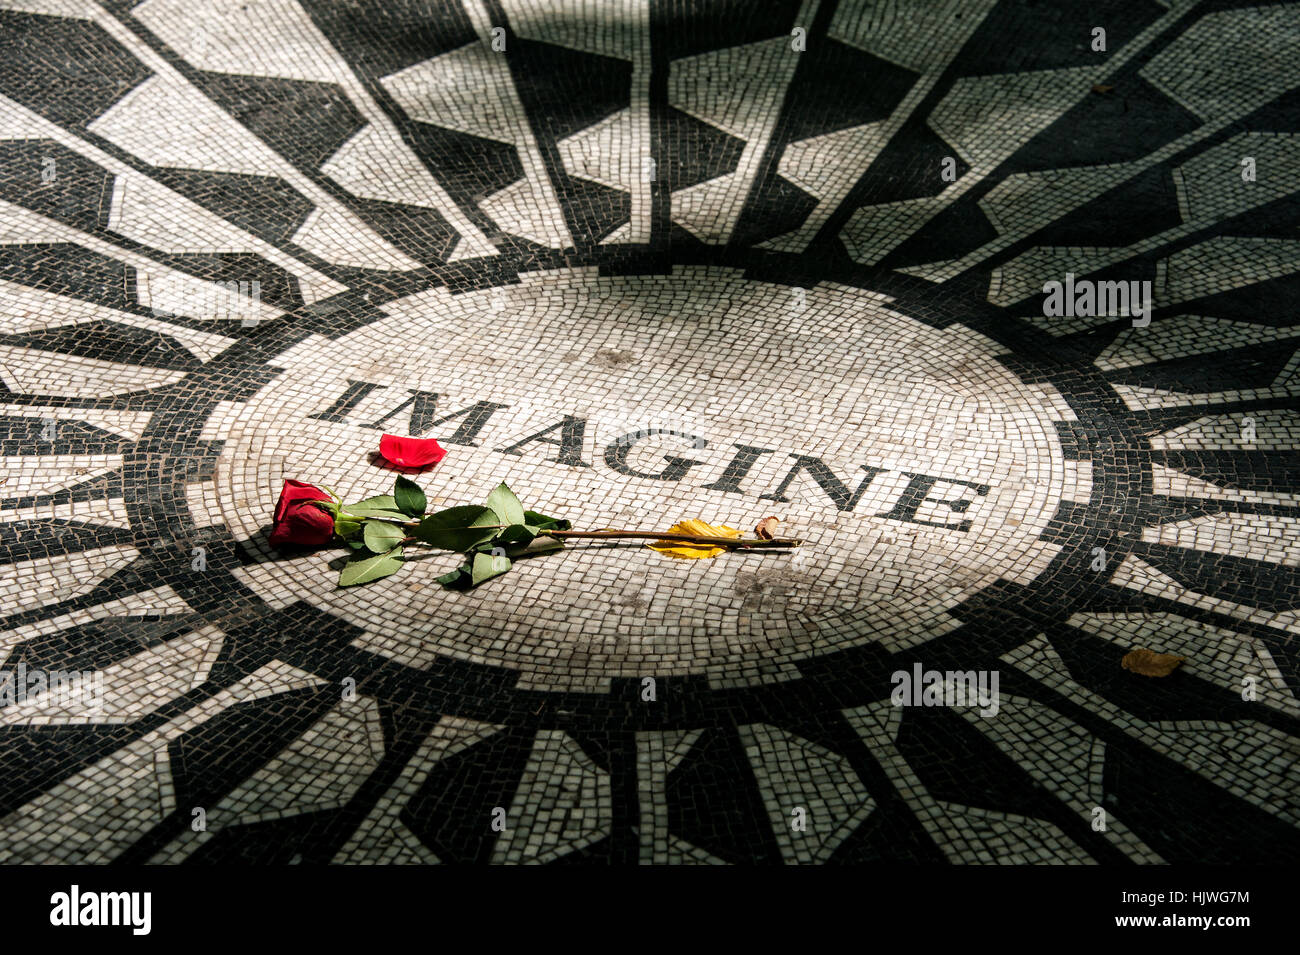 Strawberry Fields Memorial, imaginer mosaïque avec rose rouge dans la mémoire de John Lennon, Central Park, Manhattan, New York City, USA Banque D'Images